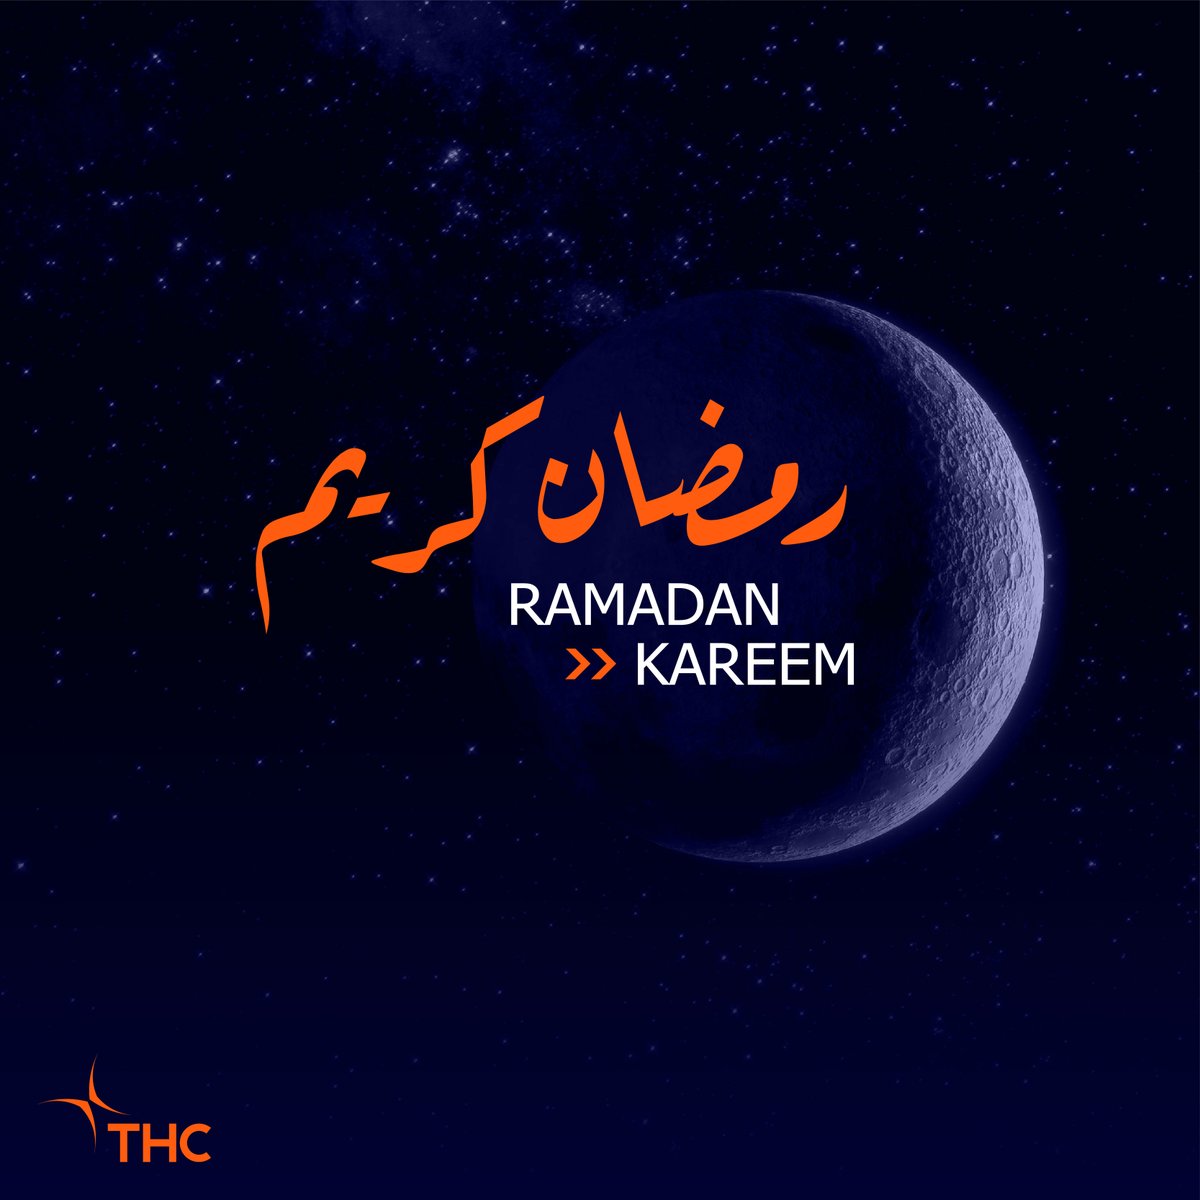 كل عام وأنتم بخير 🌙 أعاده الله عليكم باليمن والخير والبركات🕌✨ #رمضان #شركة_الطائرات_المروحية